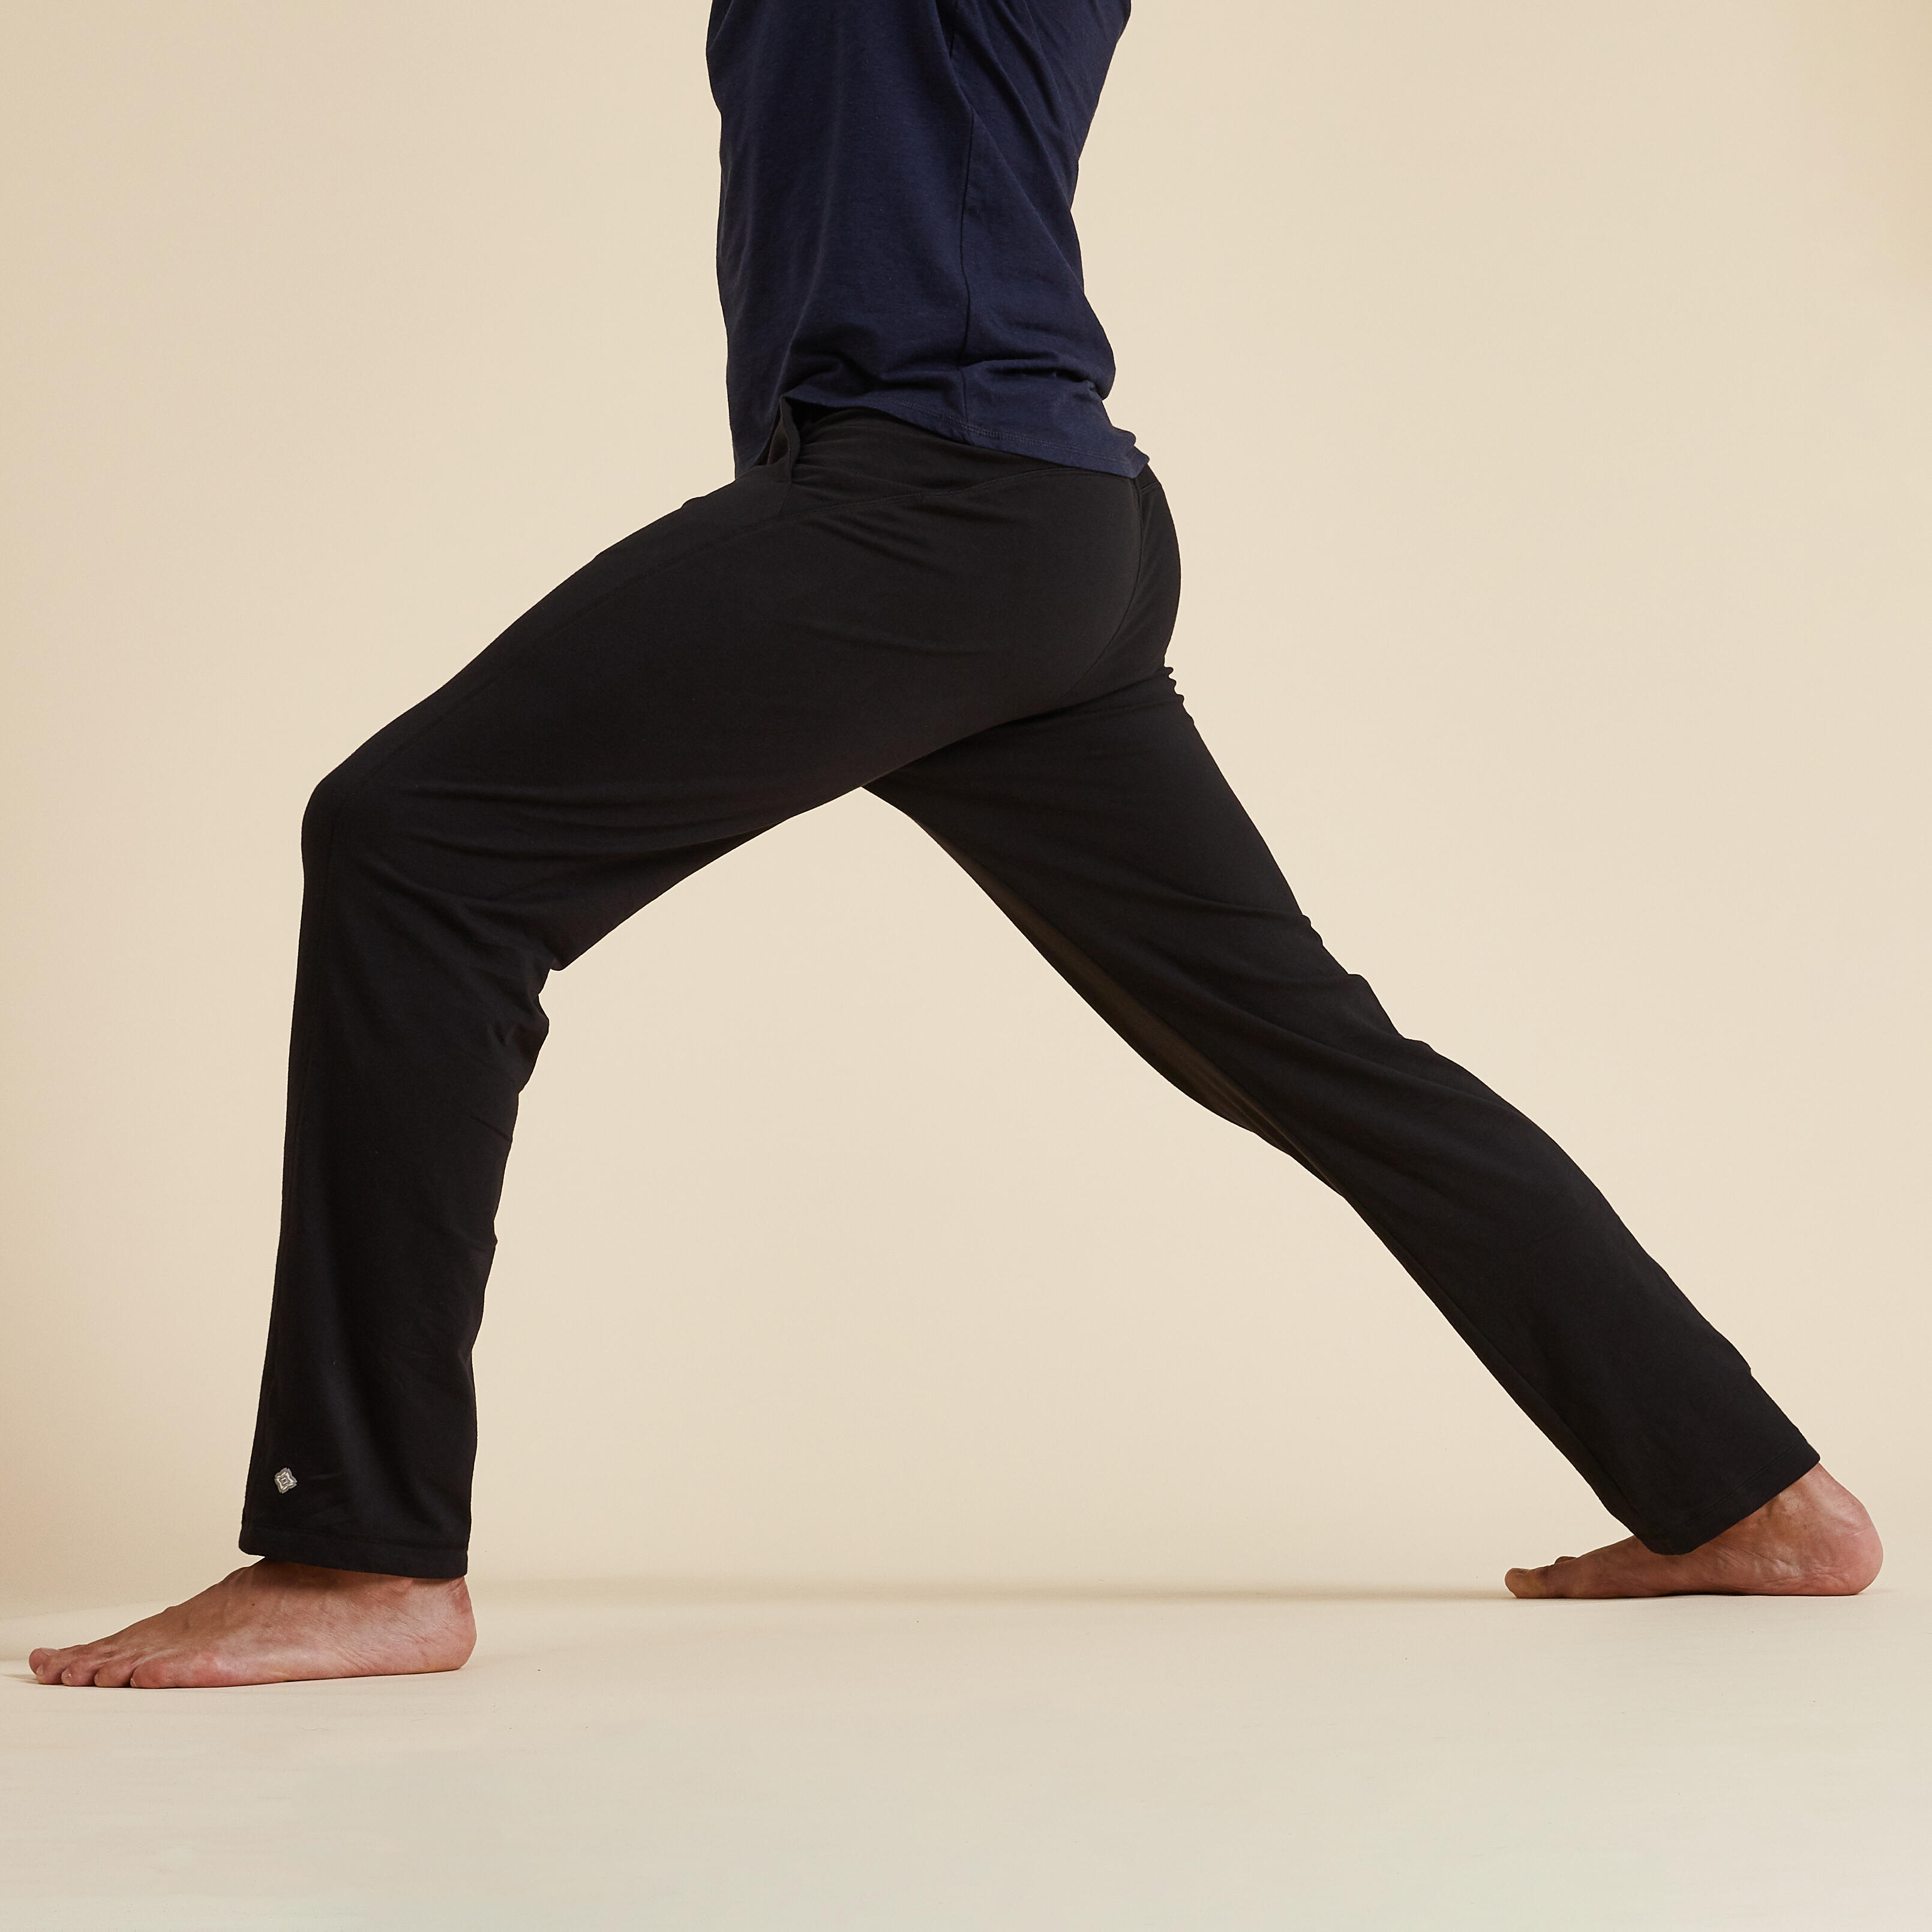 Men’s Yoga Pants - Black - KIMJALY